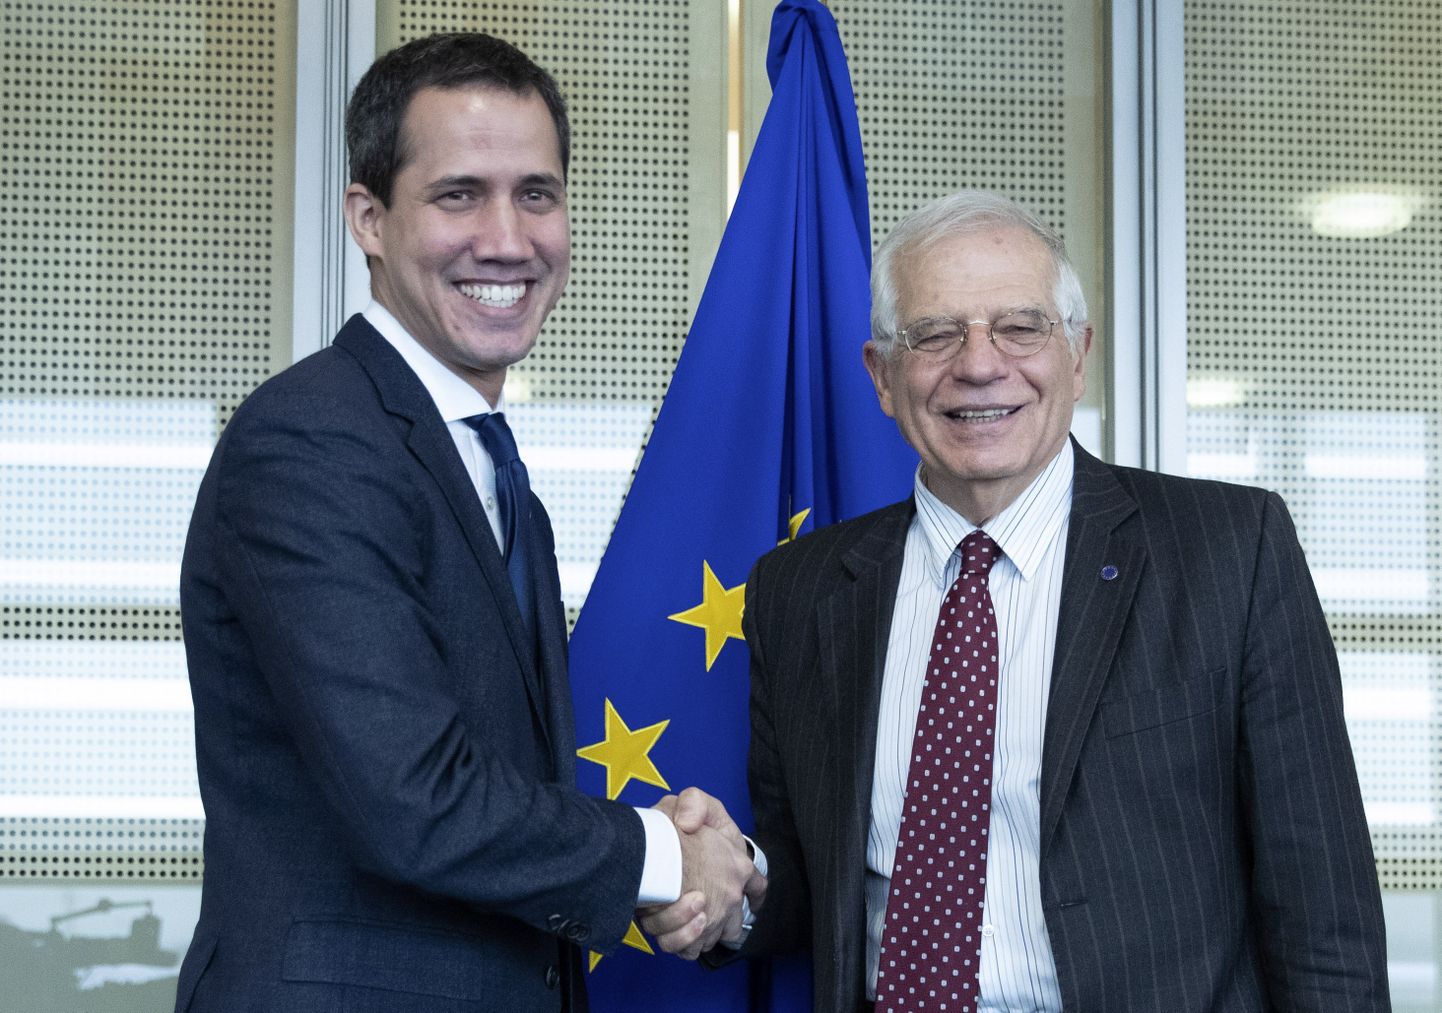 Venezuela opositsiooniliider Juan Guaidó (vasakul) koos Euroopa Liidu välispoliitika juhi Josep Borrelliga Euroopa Liidu peakorteris 22. jaanuaril 2020.